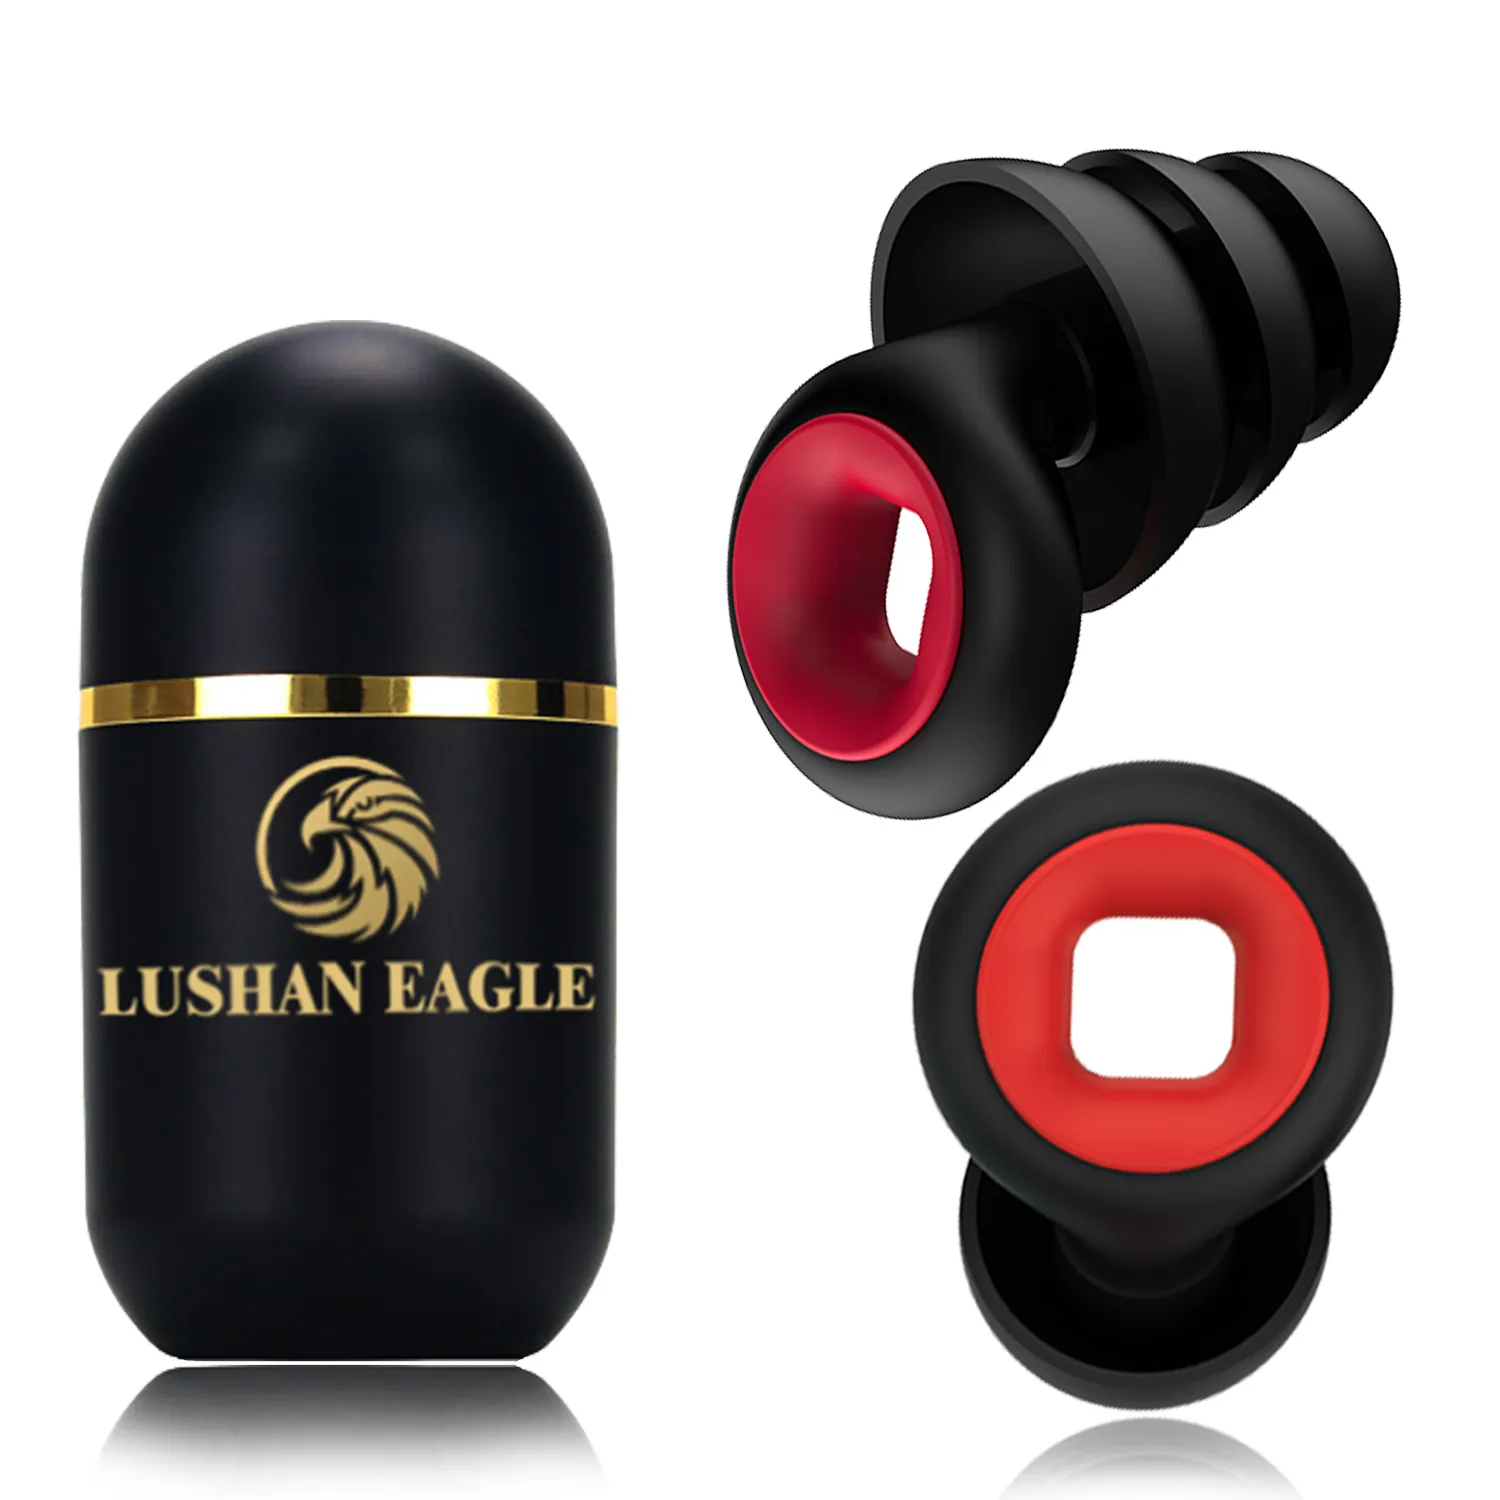 Lushan Eagle öronproppar Ljud som blockerar mjuka återanvändbara reduktionsbrus öronproppar för att sova, arbeta, flyga, konsert, DJ, bar, kontor